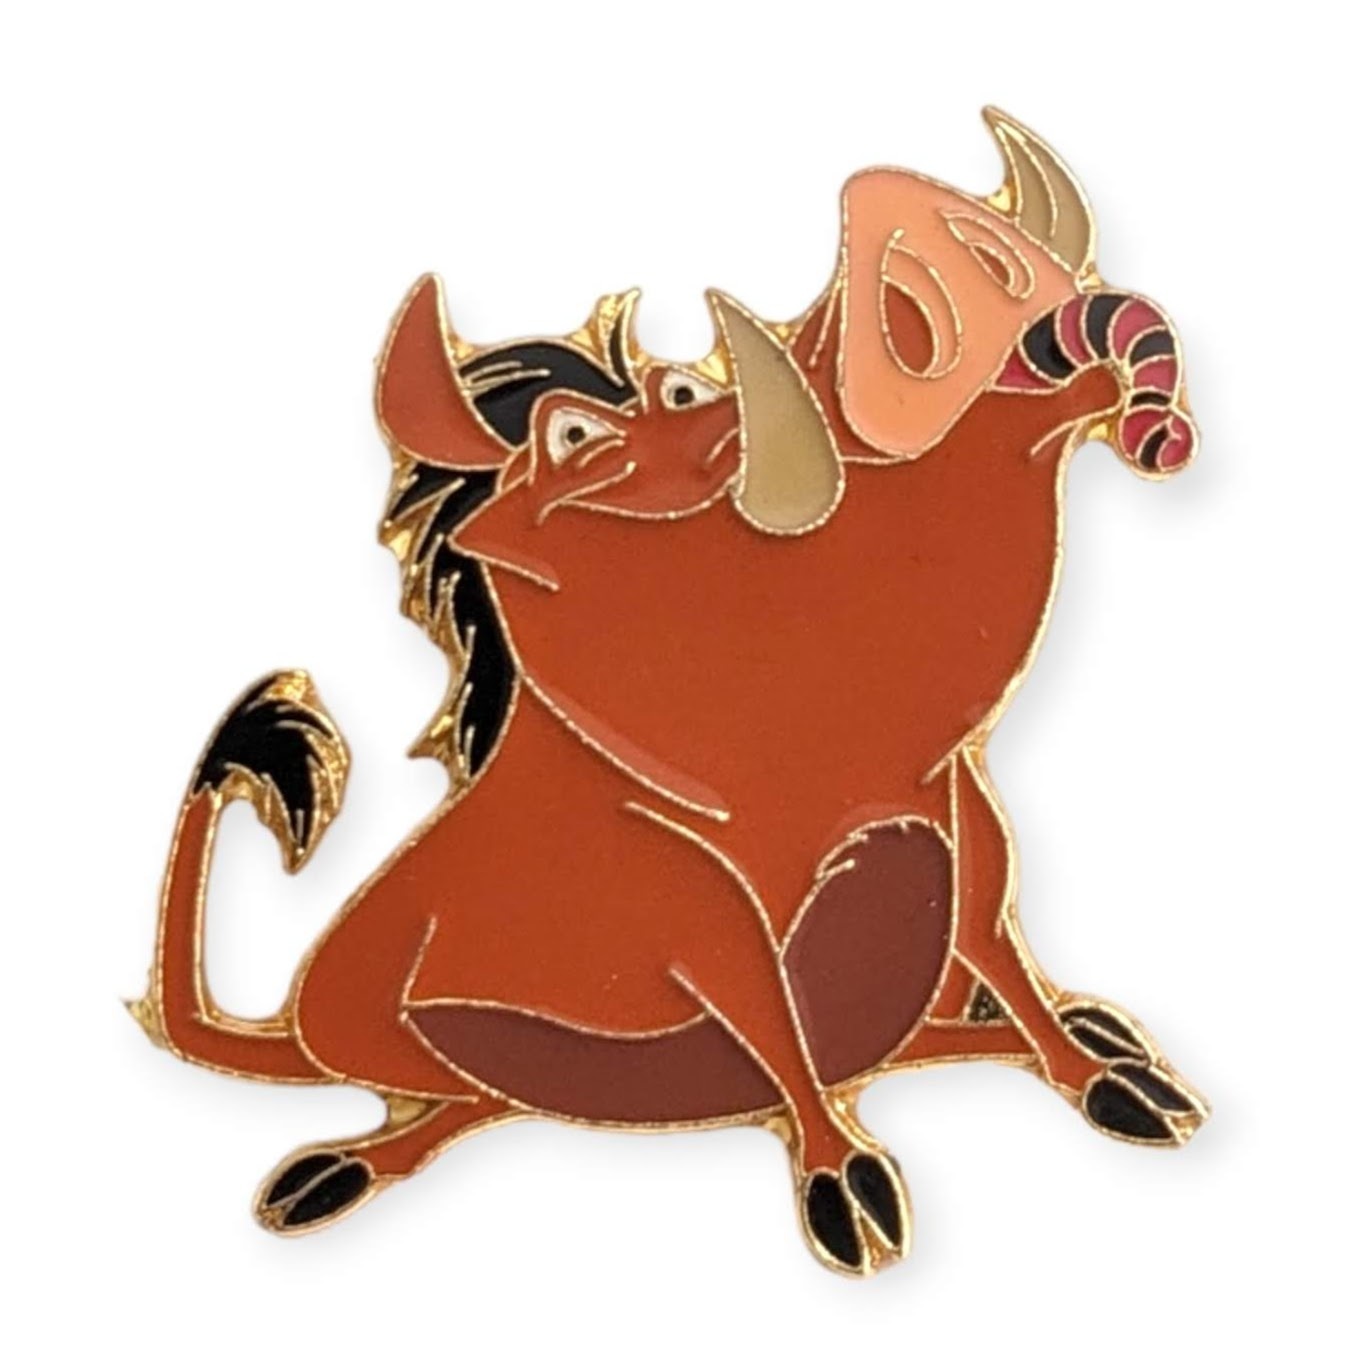 Lion King Vintage Disney Pin: Pumbaa Eating Grubs - Other